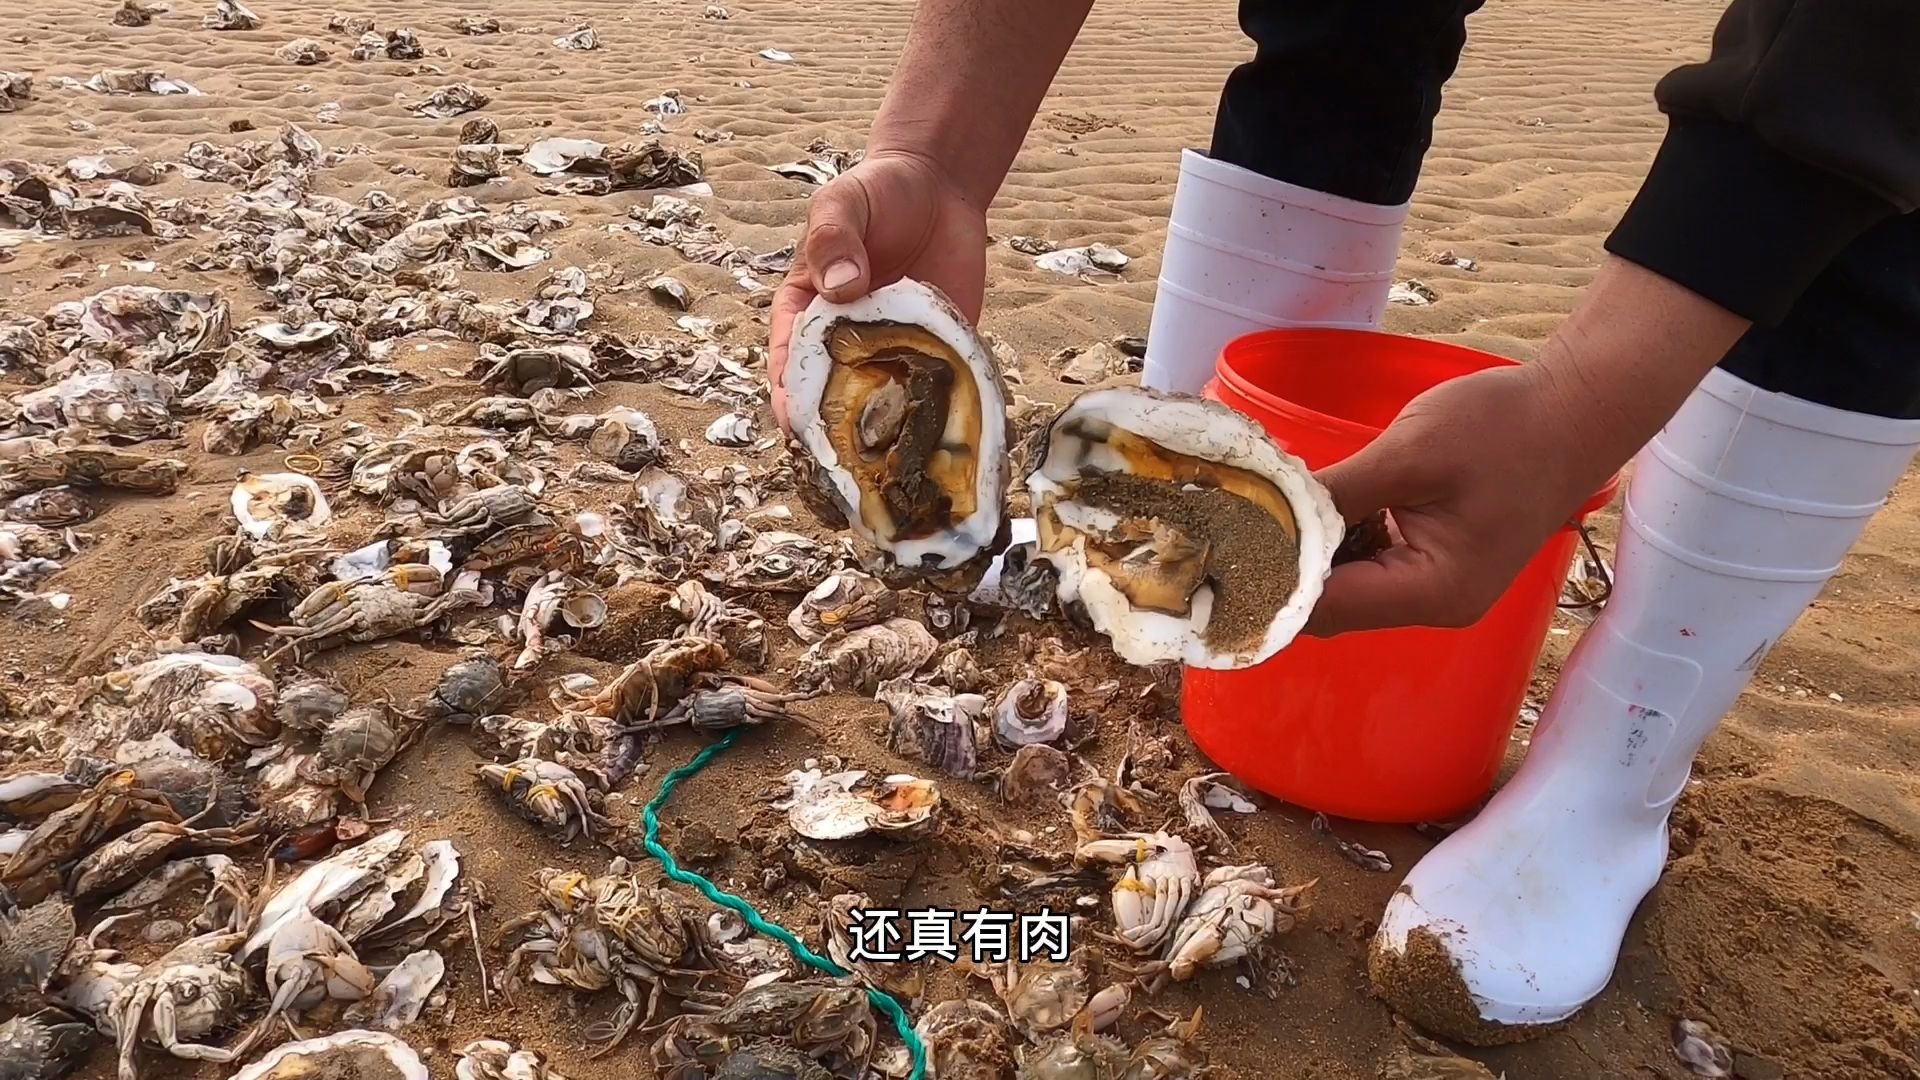 大庆赶海、遇到的破渔网上居然还是满满的爆网，生蚝螃蟹丢个遍地